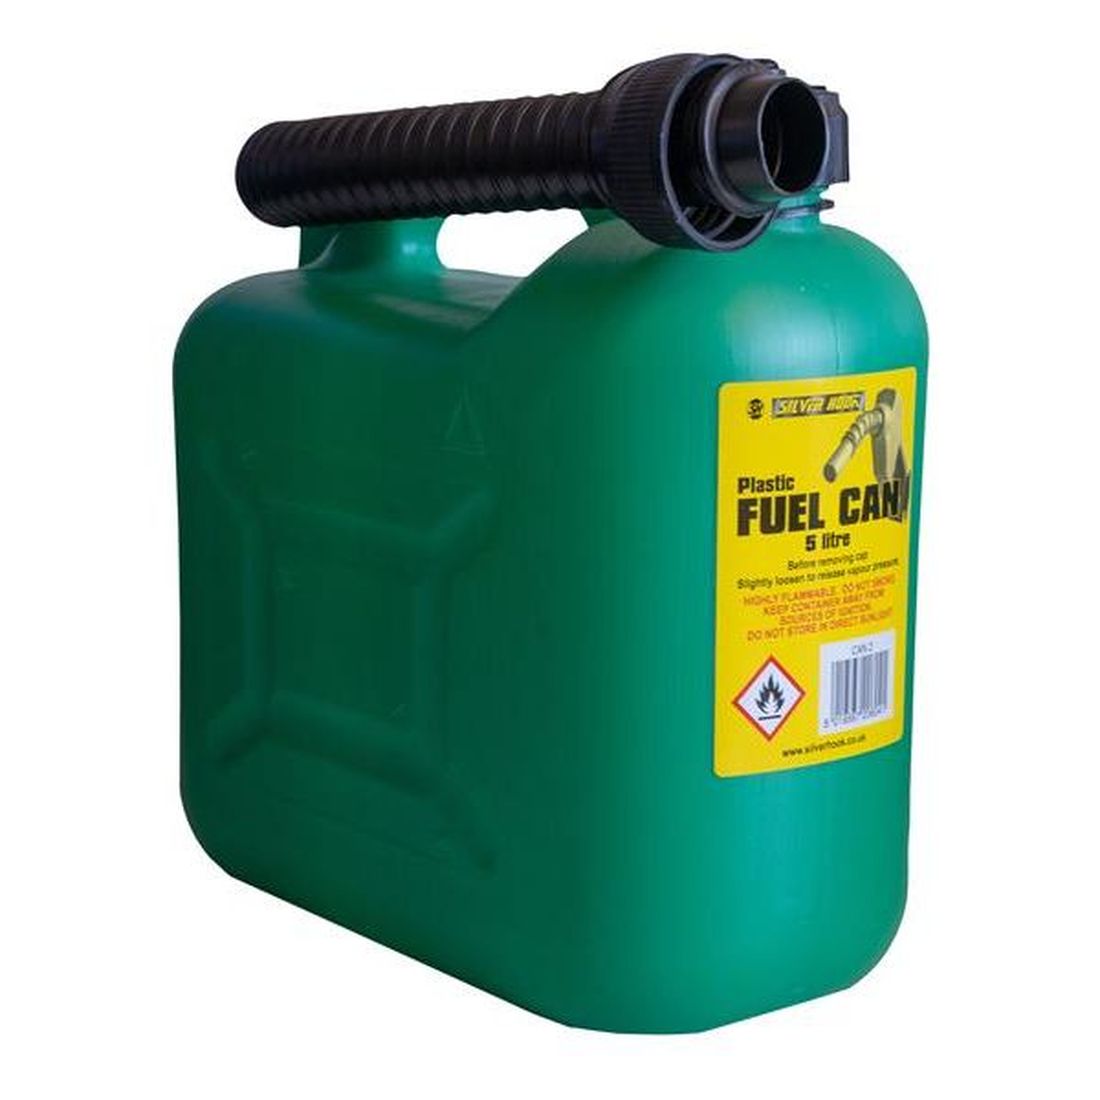 Silverhook Unleaded Petrol Can & Spout Green 5 litre                                       